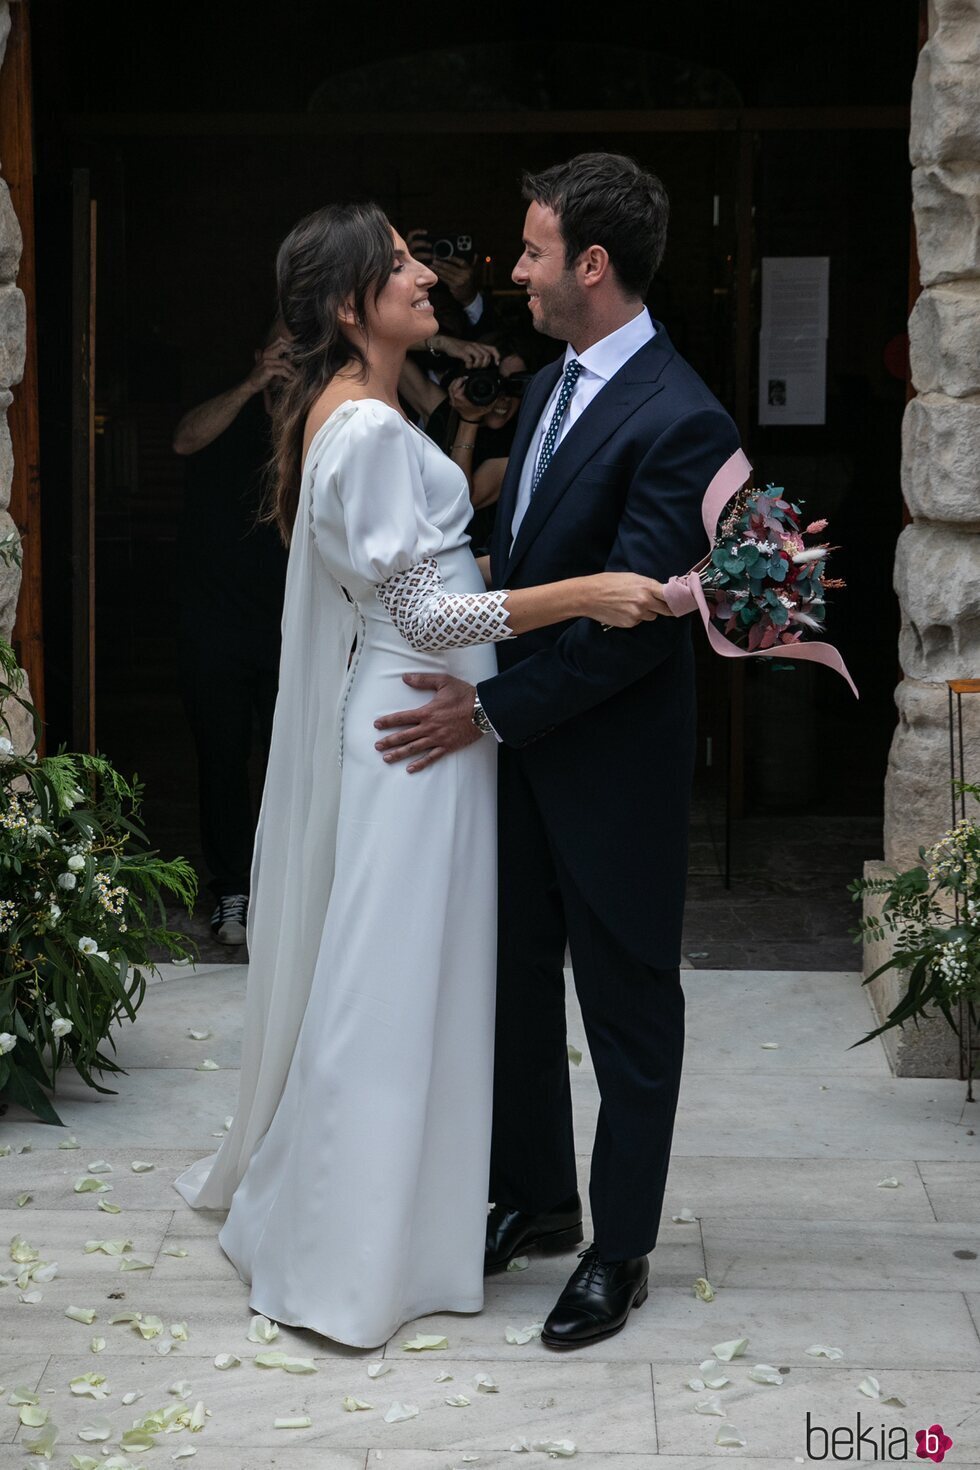 Matías Prats Junior y Claudia Collado se casan en la Costa Brava